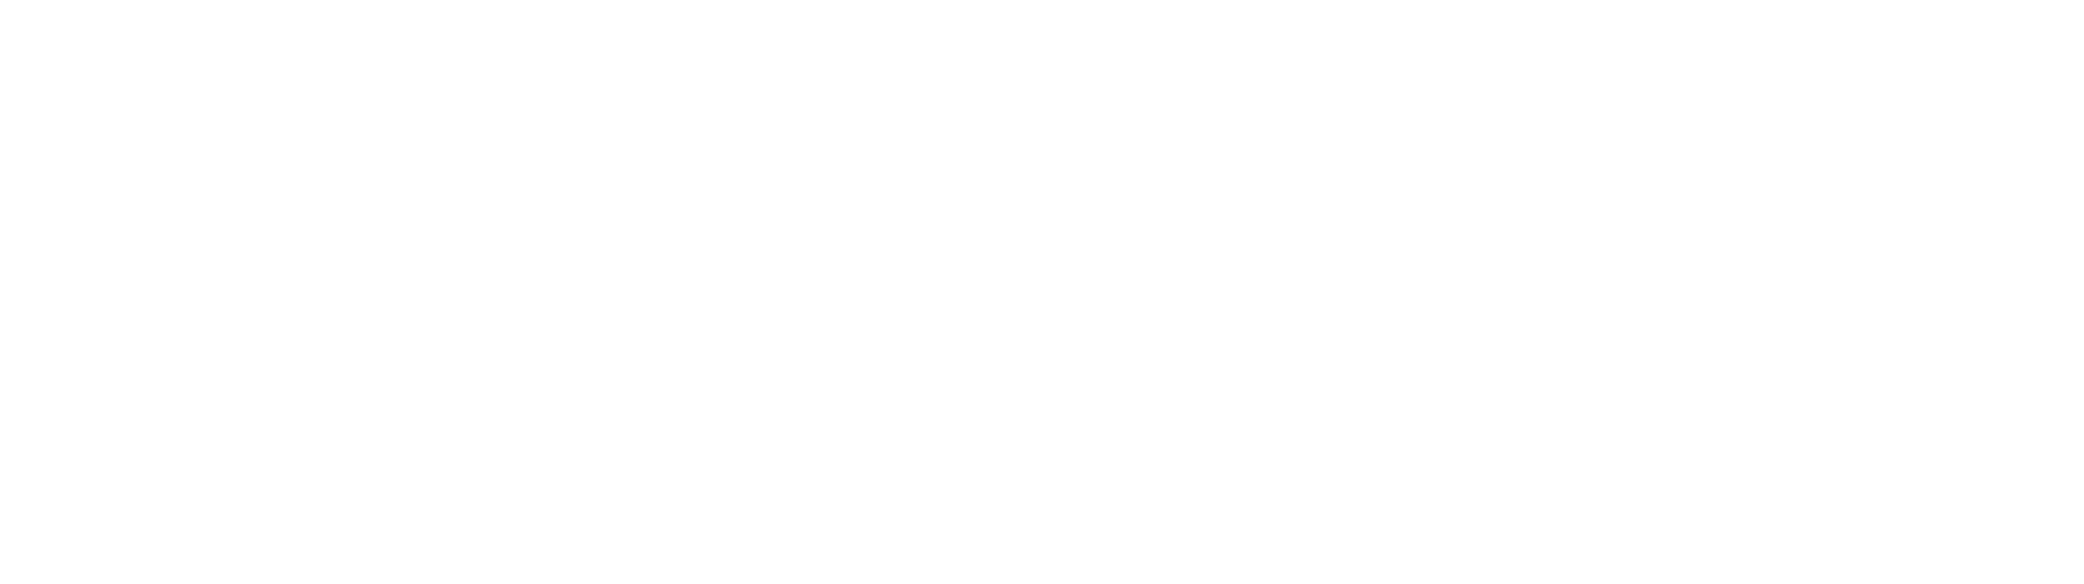 VaLogic a GxP compliance service provider's